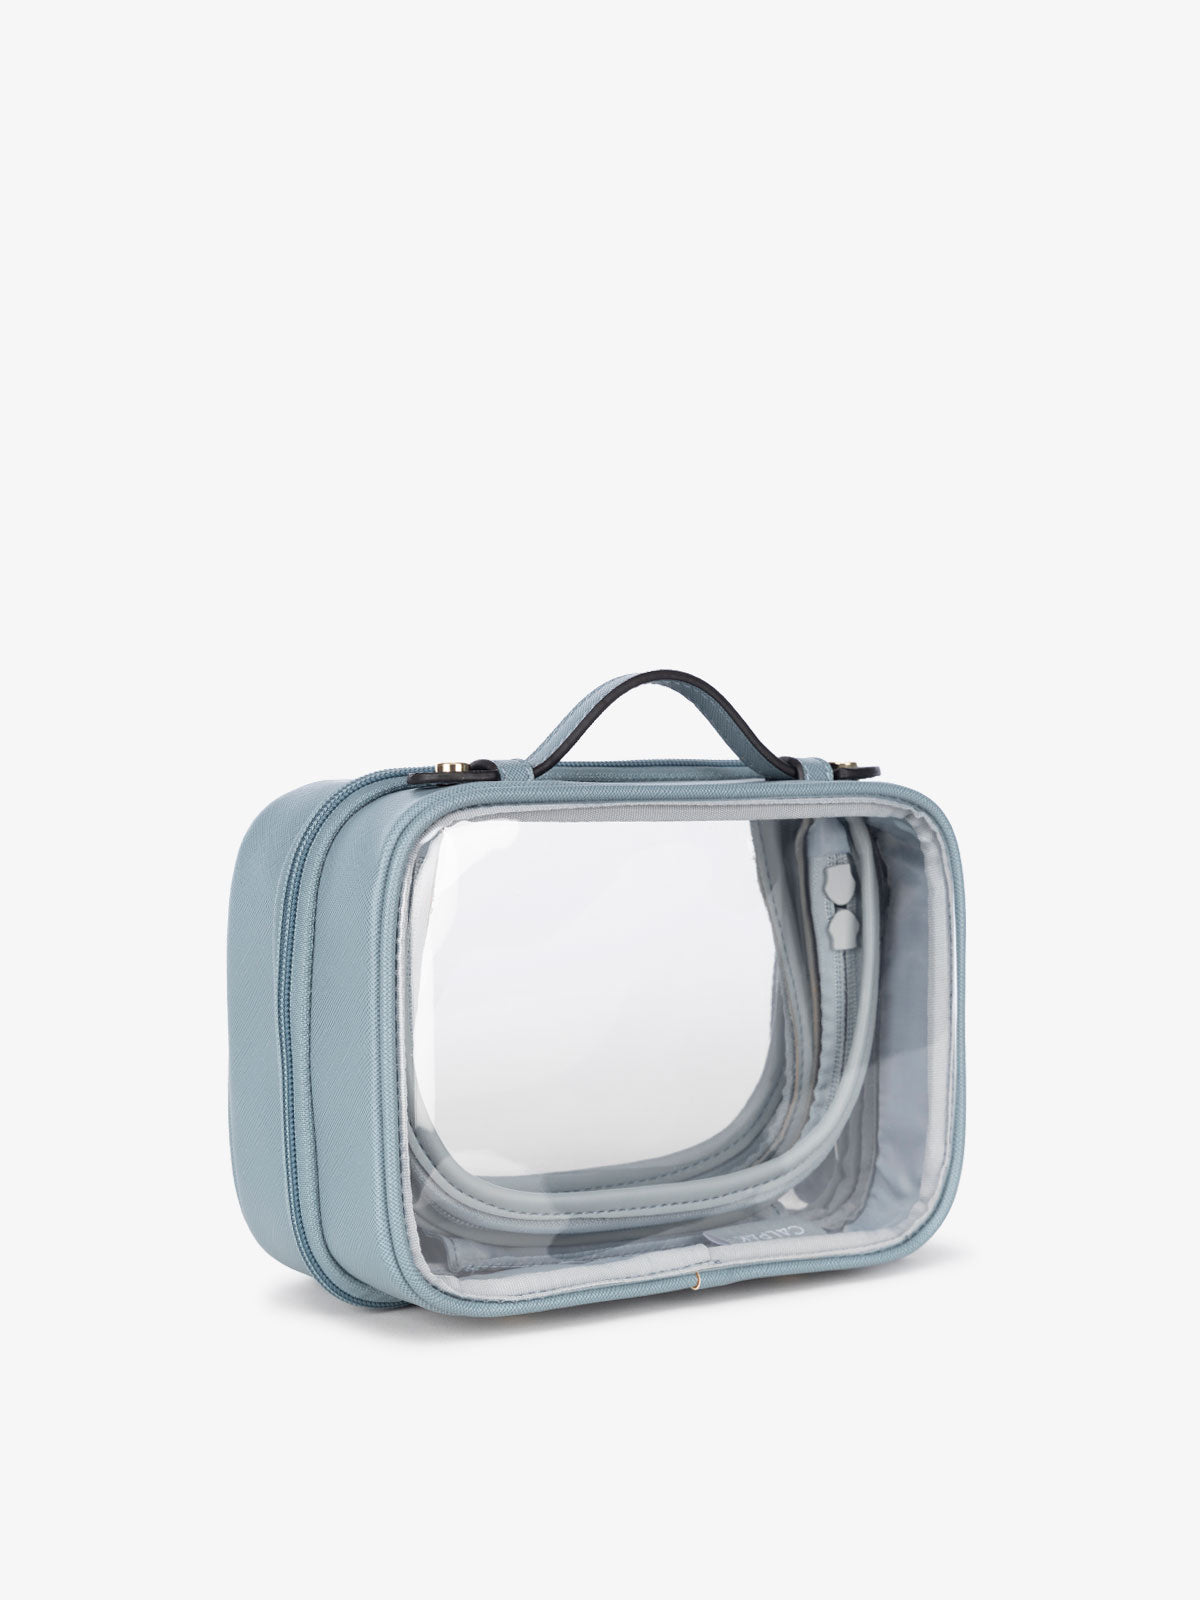 CALPAK mini transparent cosmetics case with handles in blue